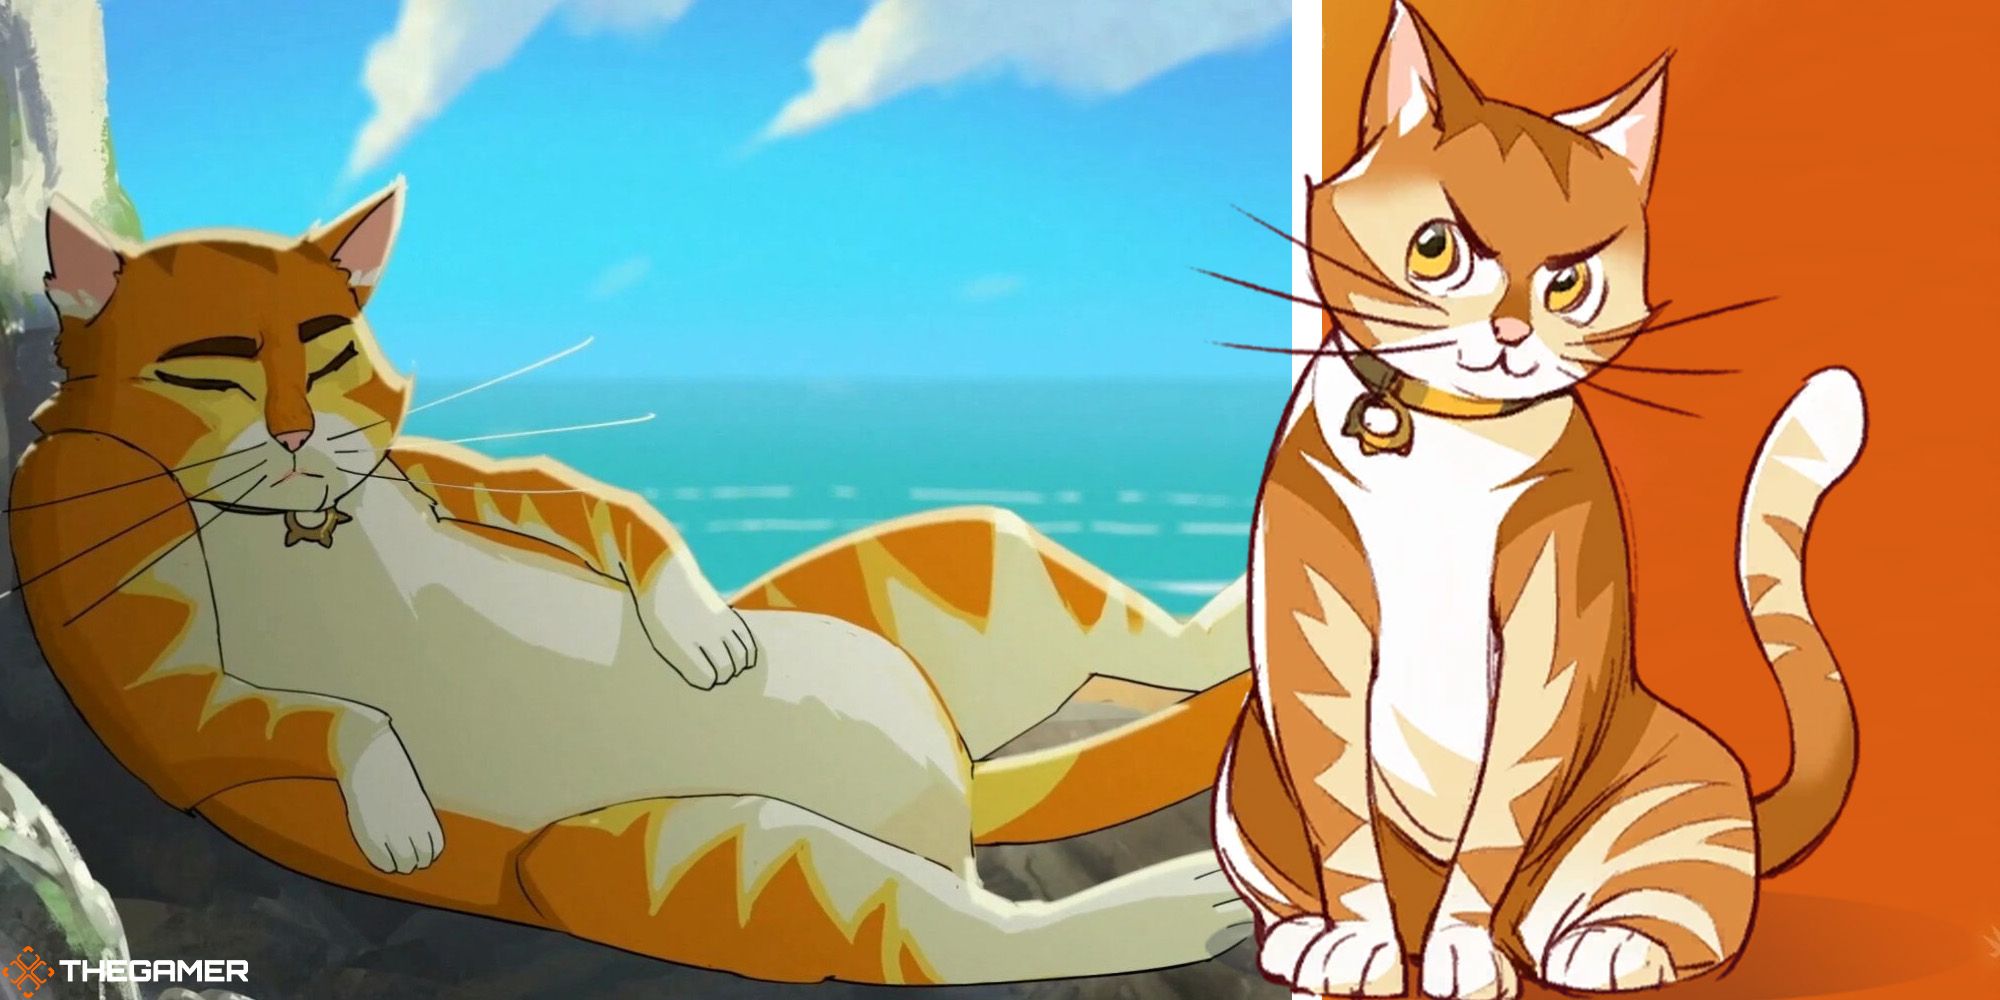 Pocket, an orange and white cat, from Boyfriend Dungeon